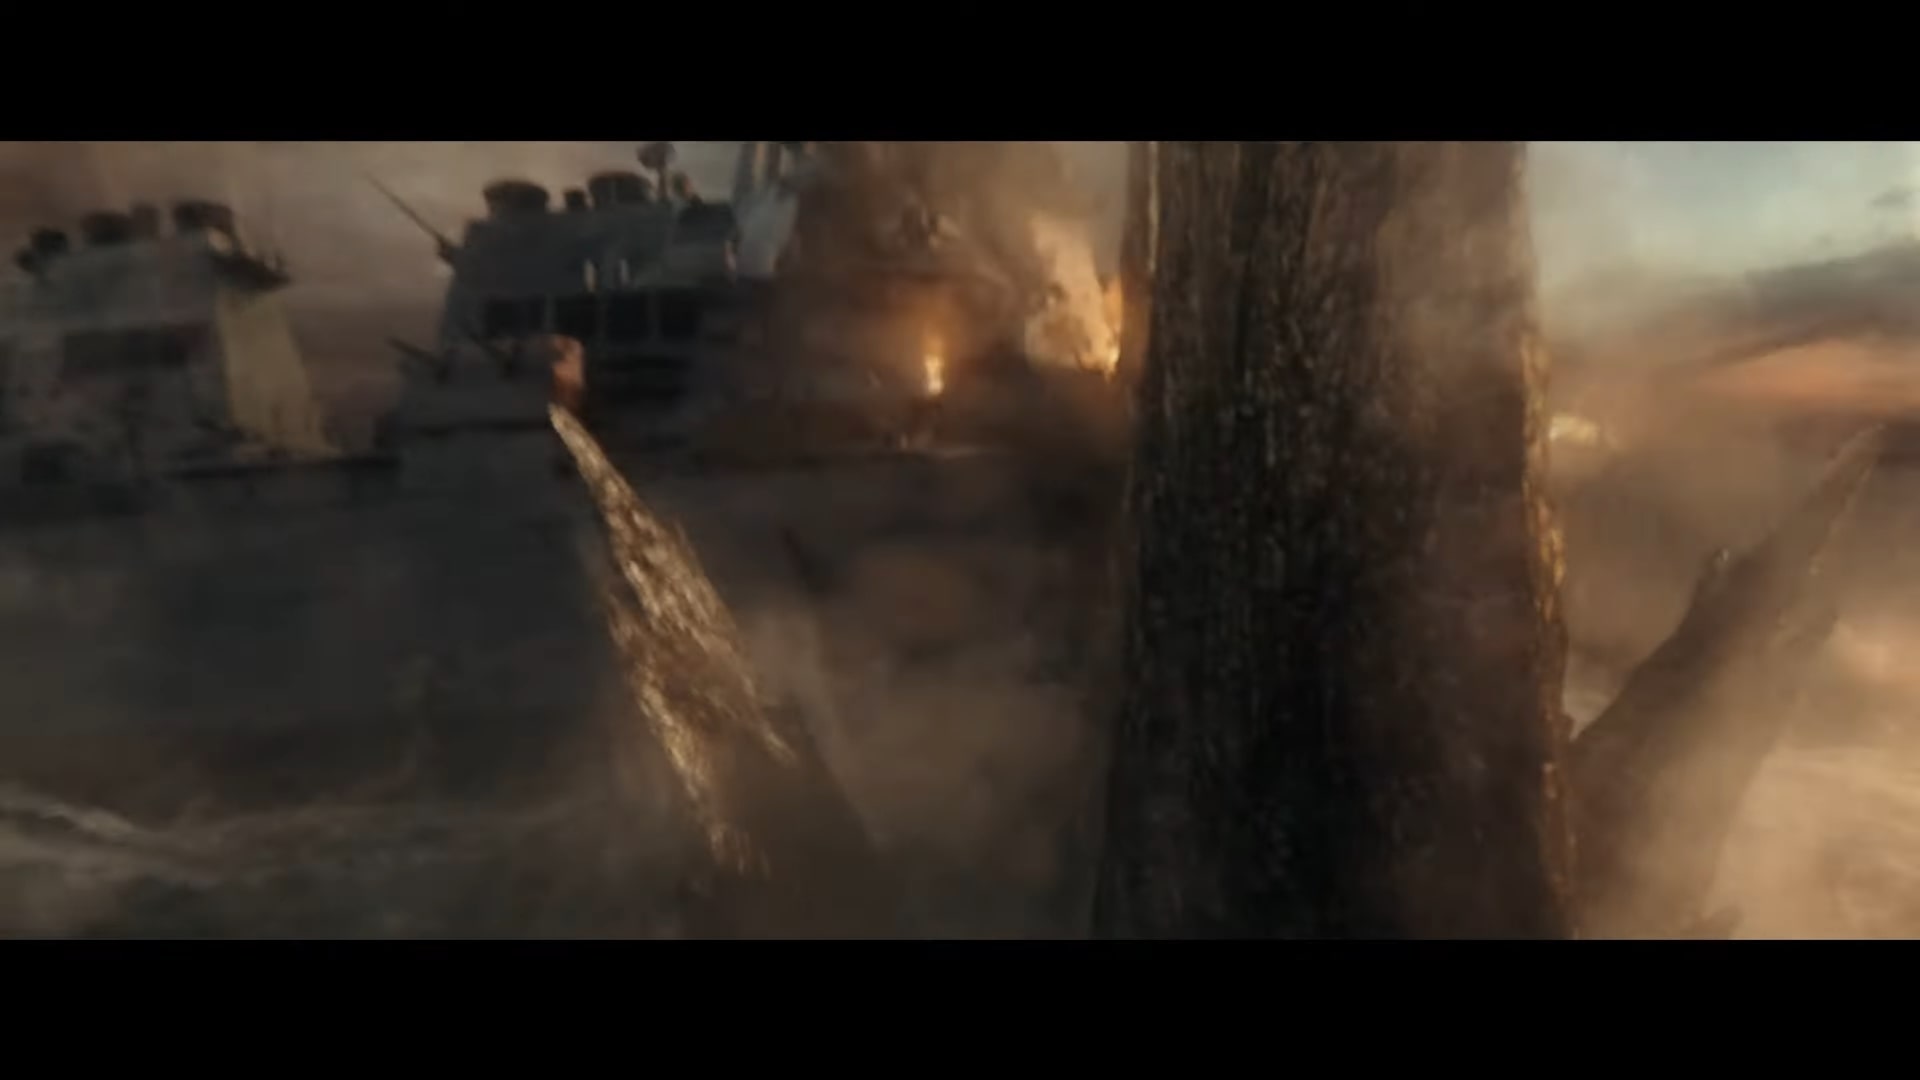 Trailer chính thức Godzilla vs. Kong xuất hiện, hứa hẹn cuộc chiến kinh thiên động địa